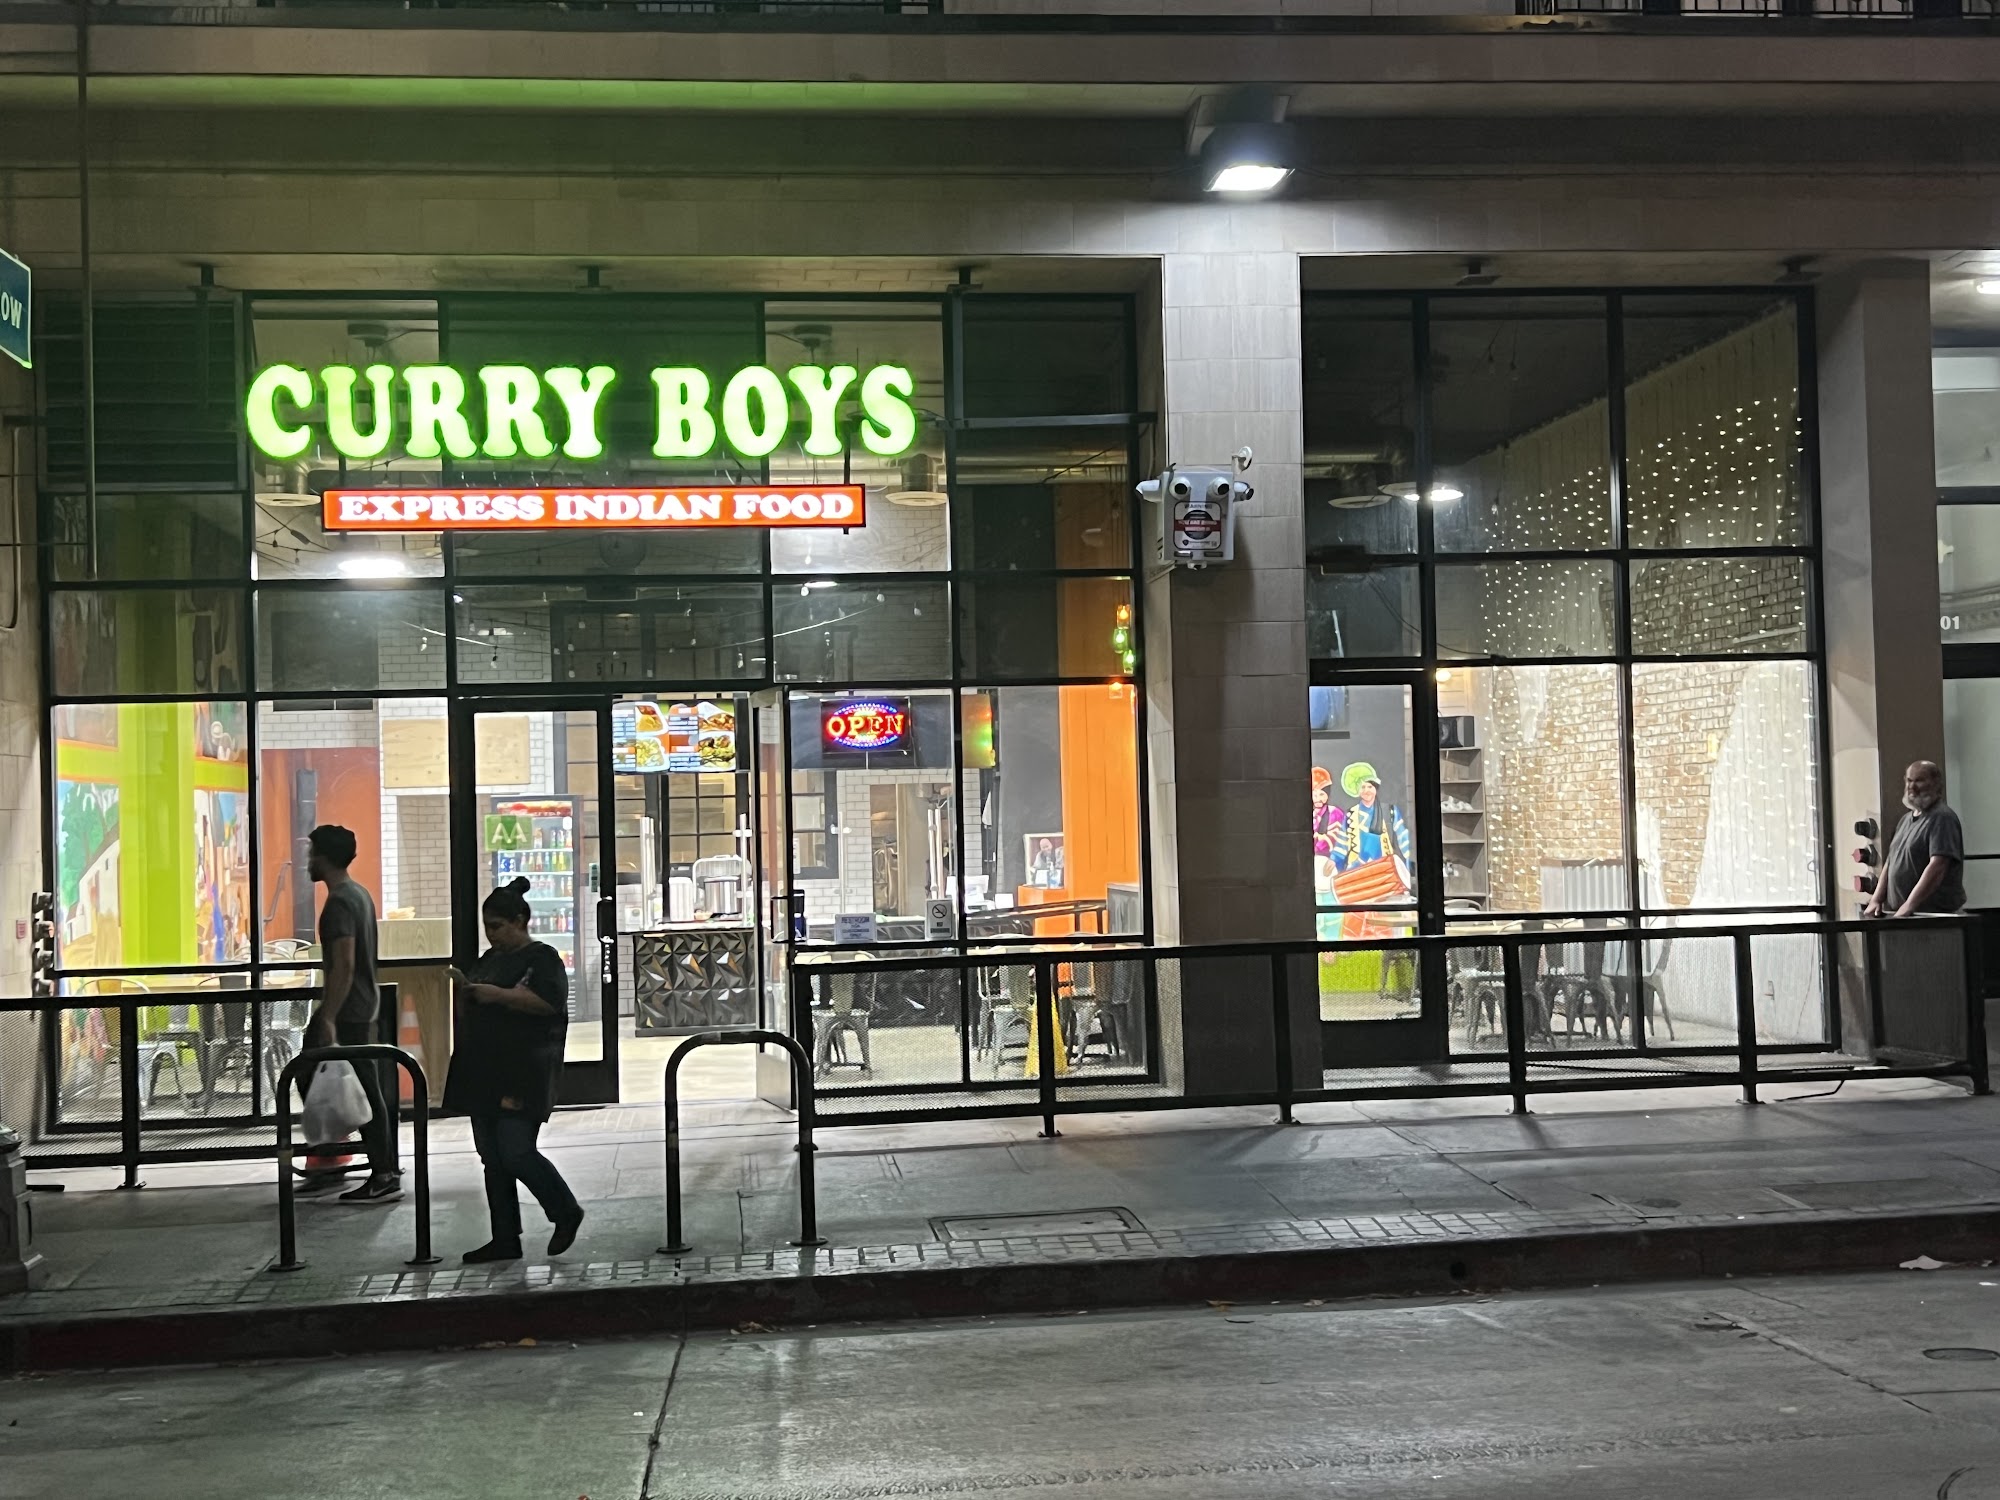 Curry boys